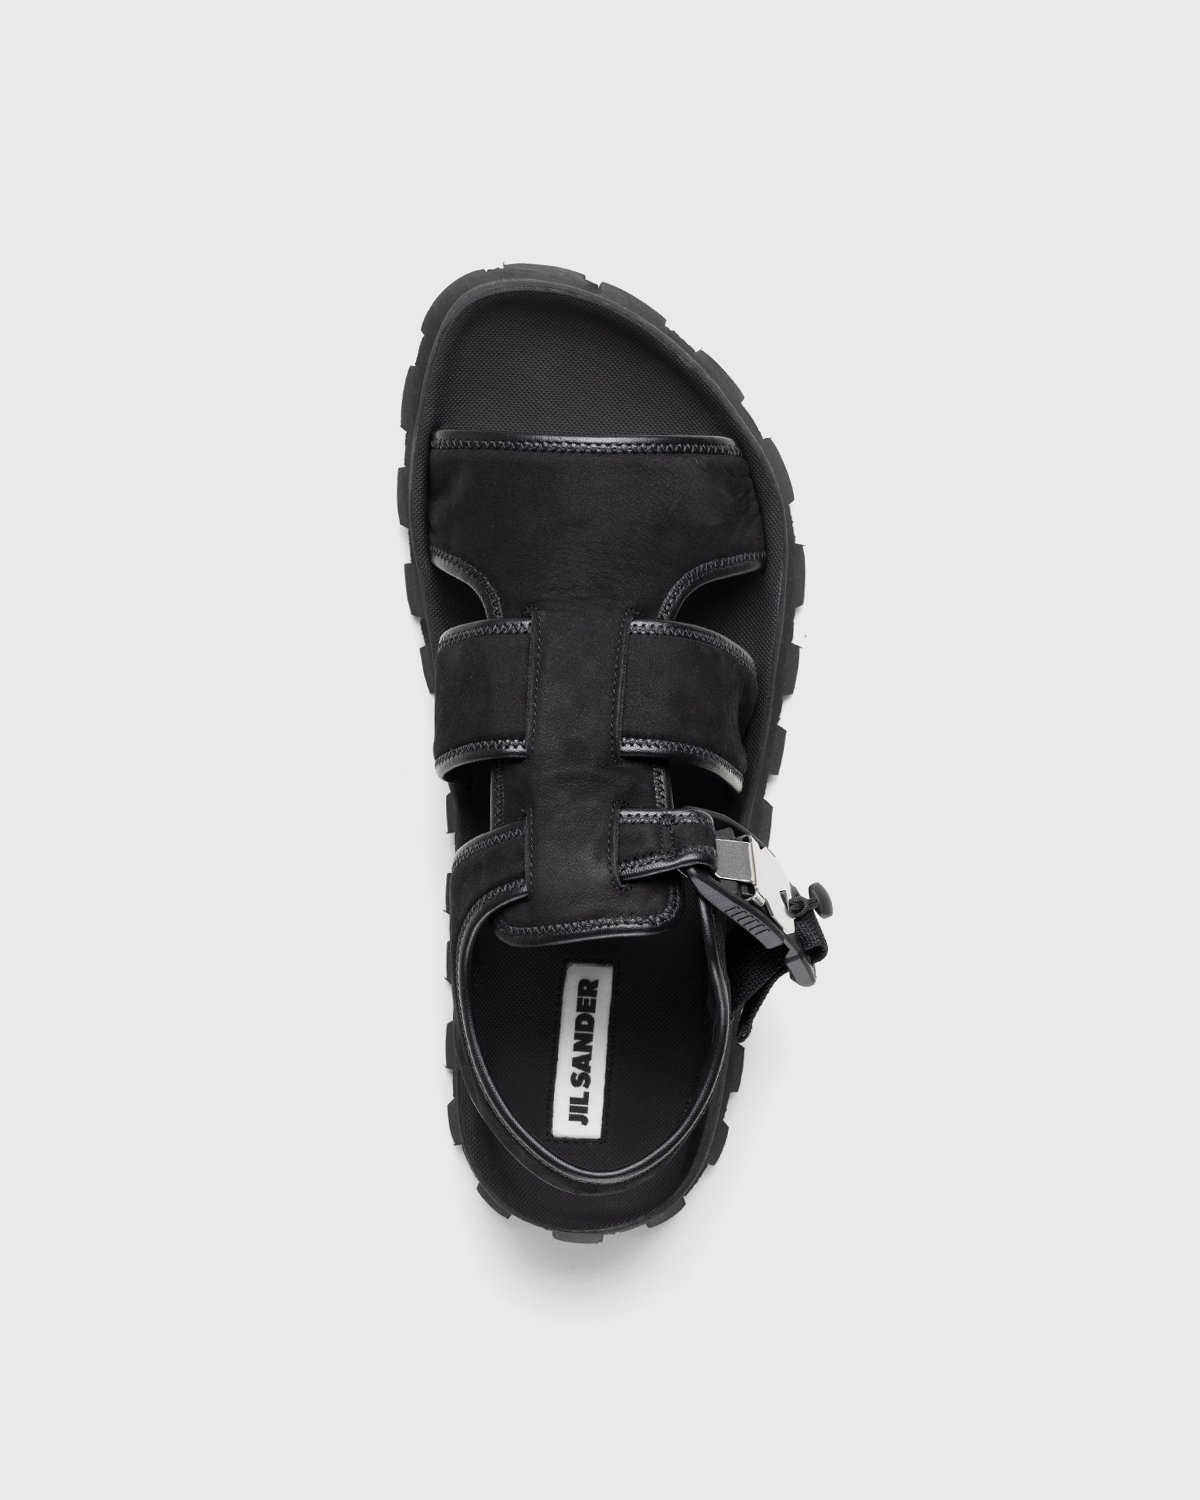 Jil Sander – Calfskin Leather Sandal Black - Sandals & Slides - Black - Image 6